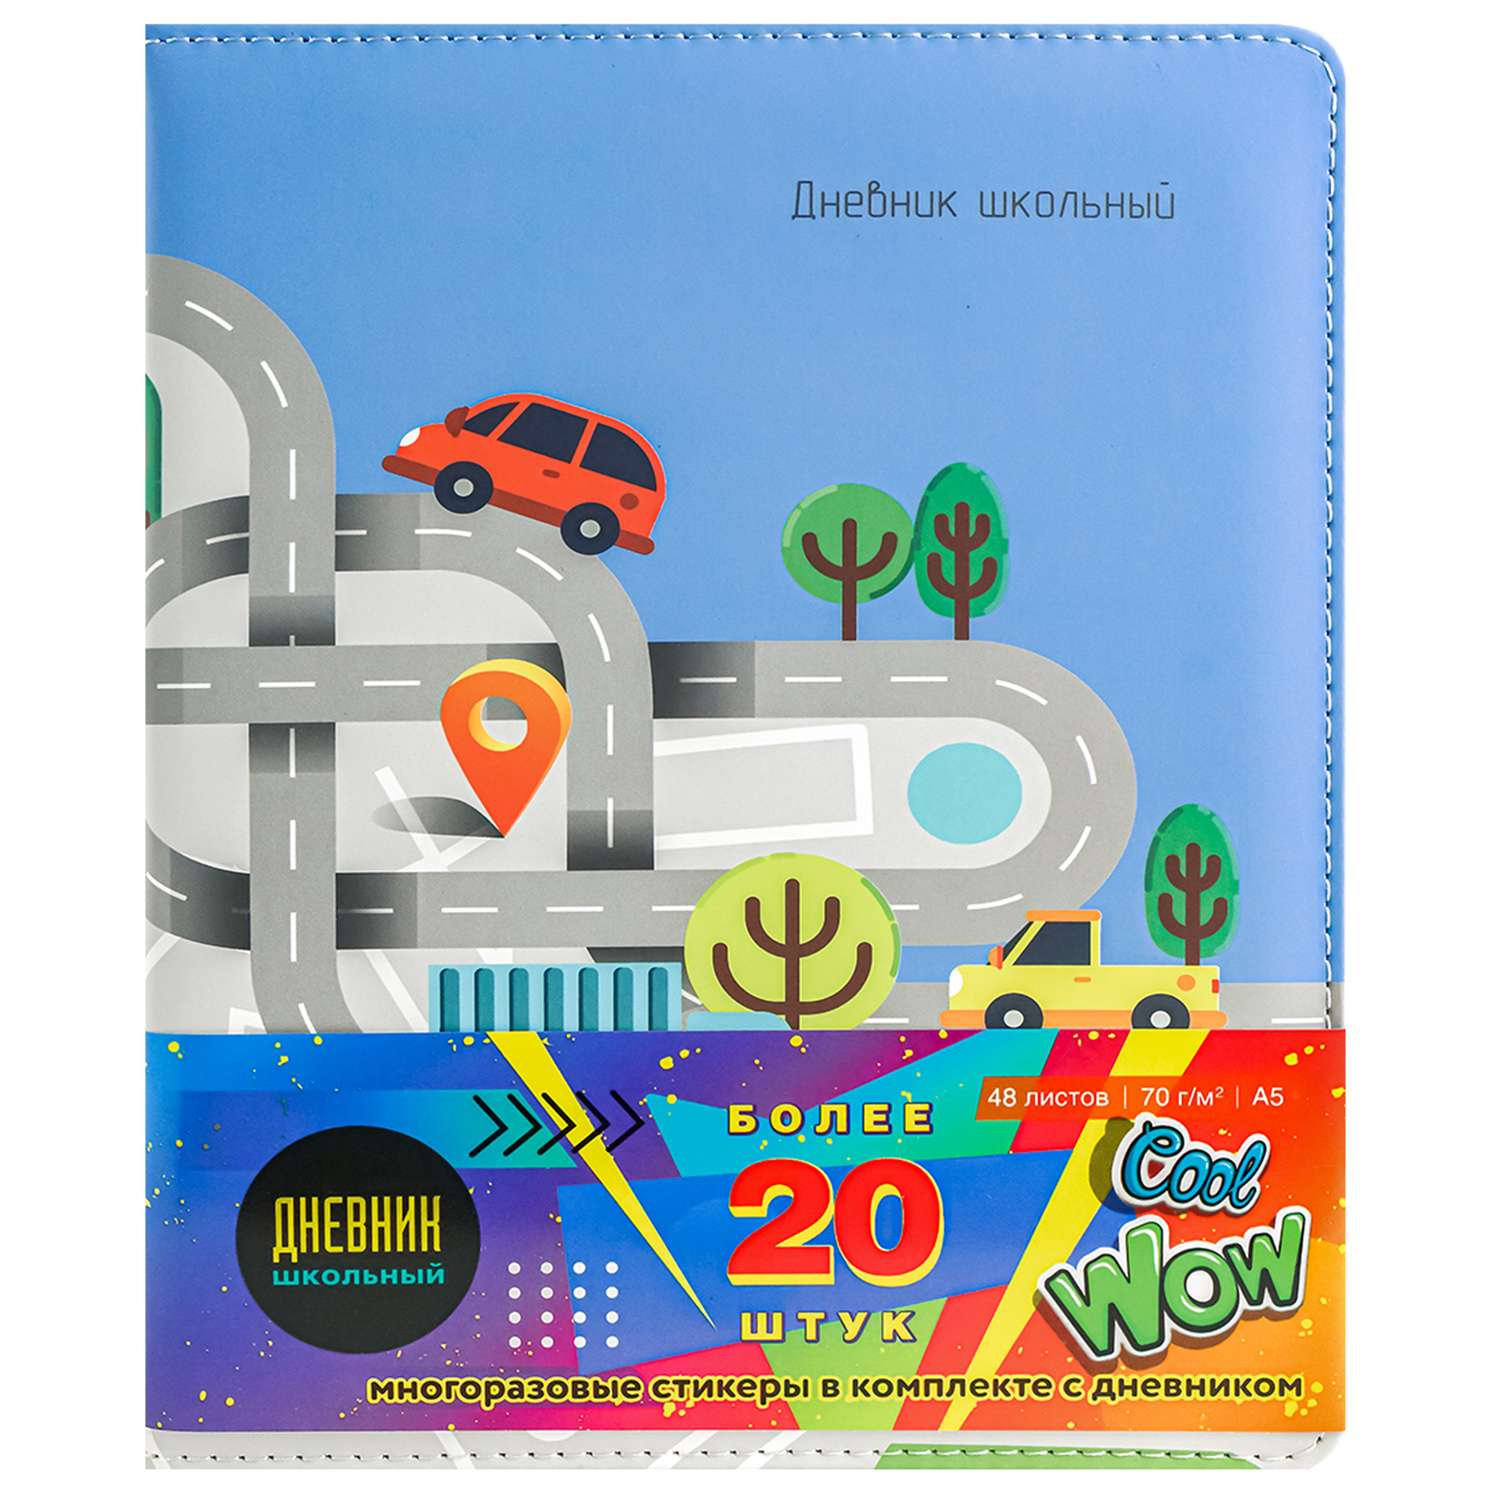 Дневник школьный Prof-Press Auto stickers 48 листов кожзам 1-11 класс и набор стикеров - фото 3